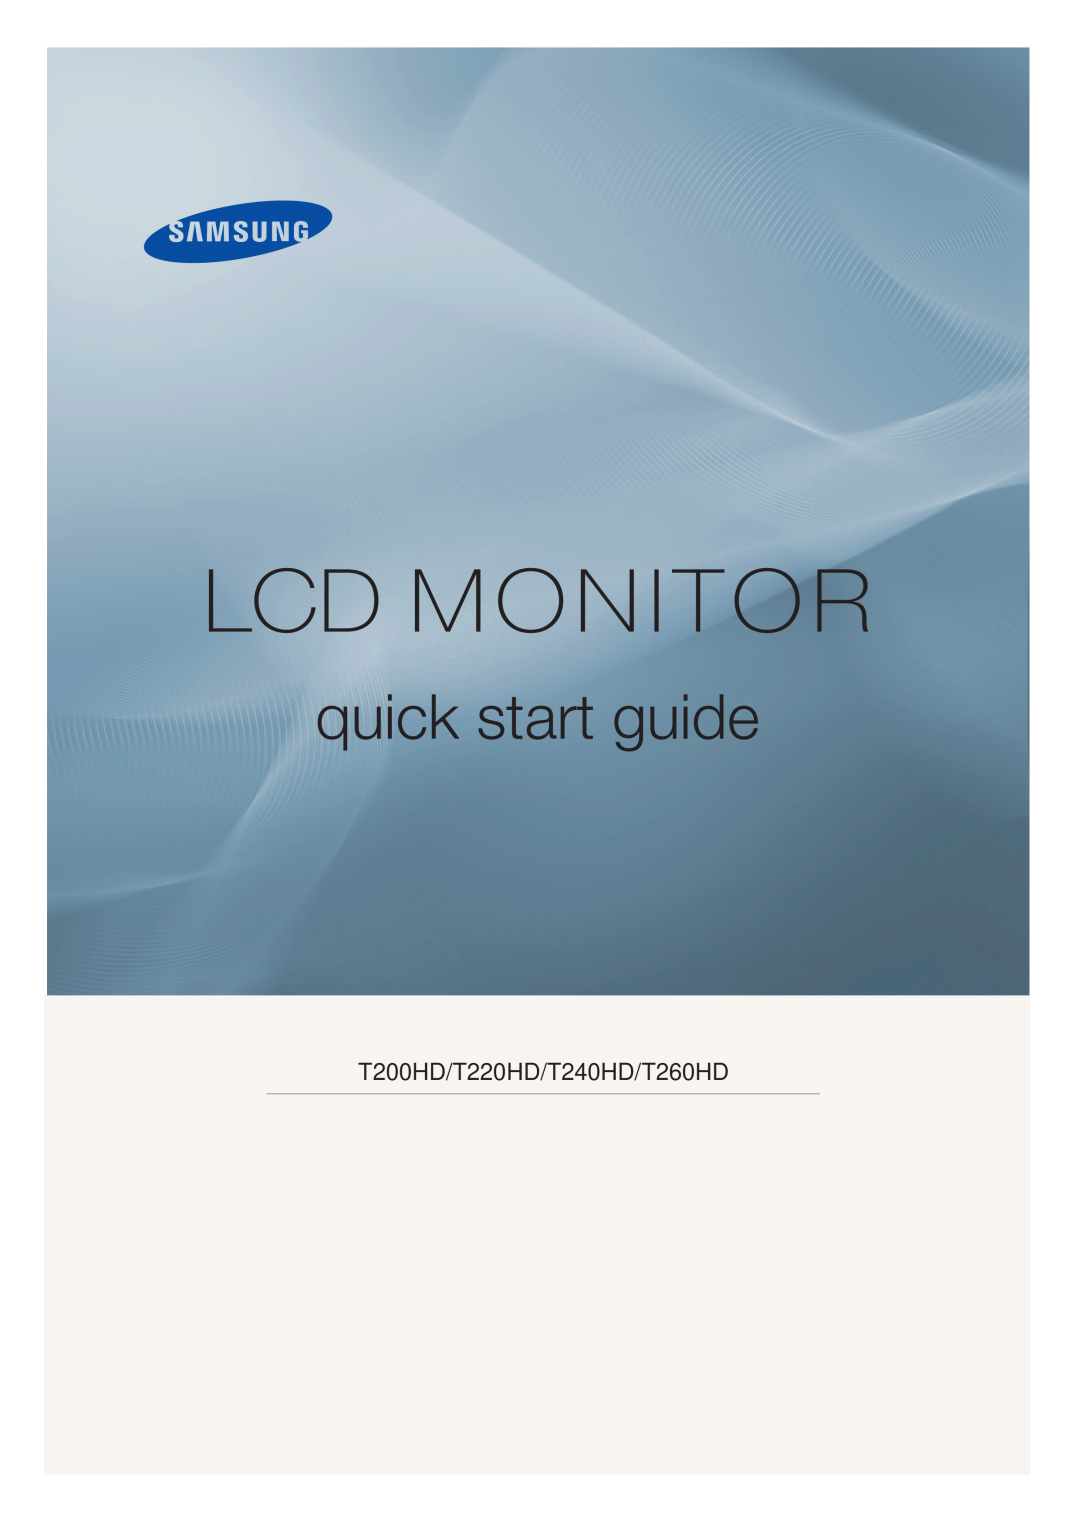 Samsung LS24TDVSUV/EN, LS20TDVSUV/EN, LS24TDDSUV/EN manual SyncMaster T200HD/T220HD/T240HD/T260HD, LCD Monitor, User Manual 